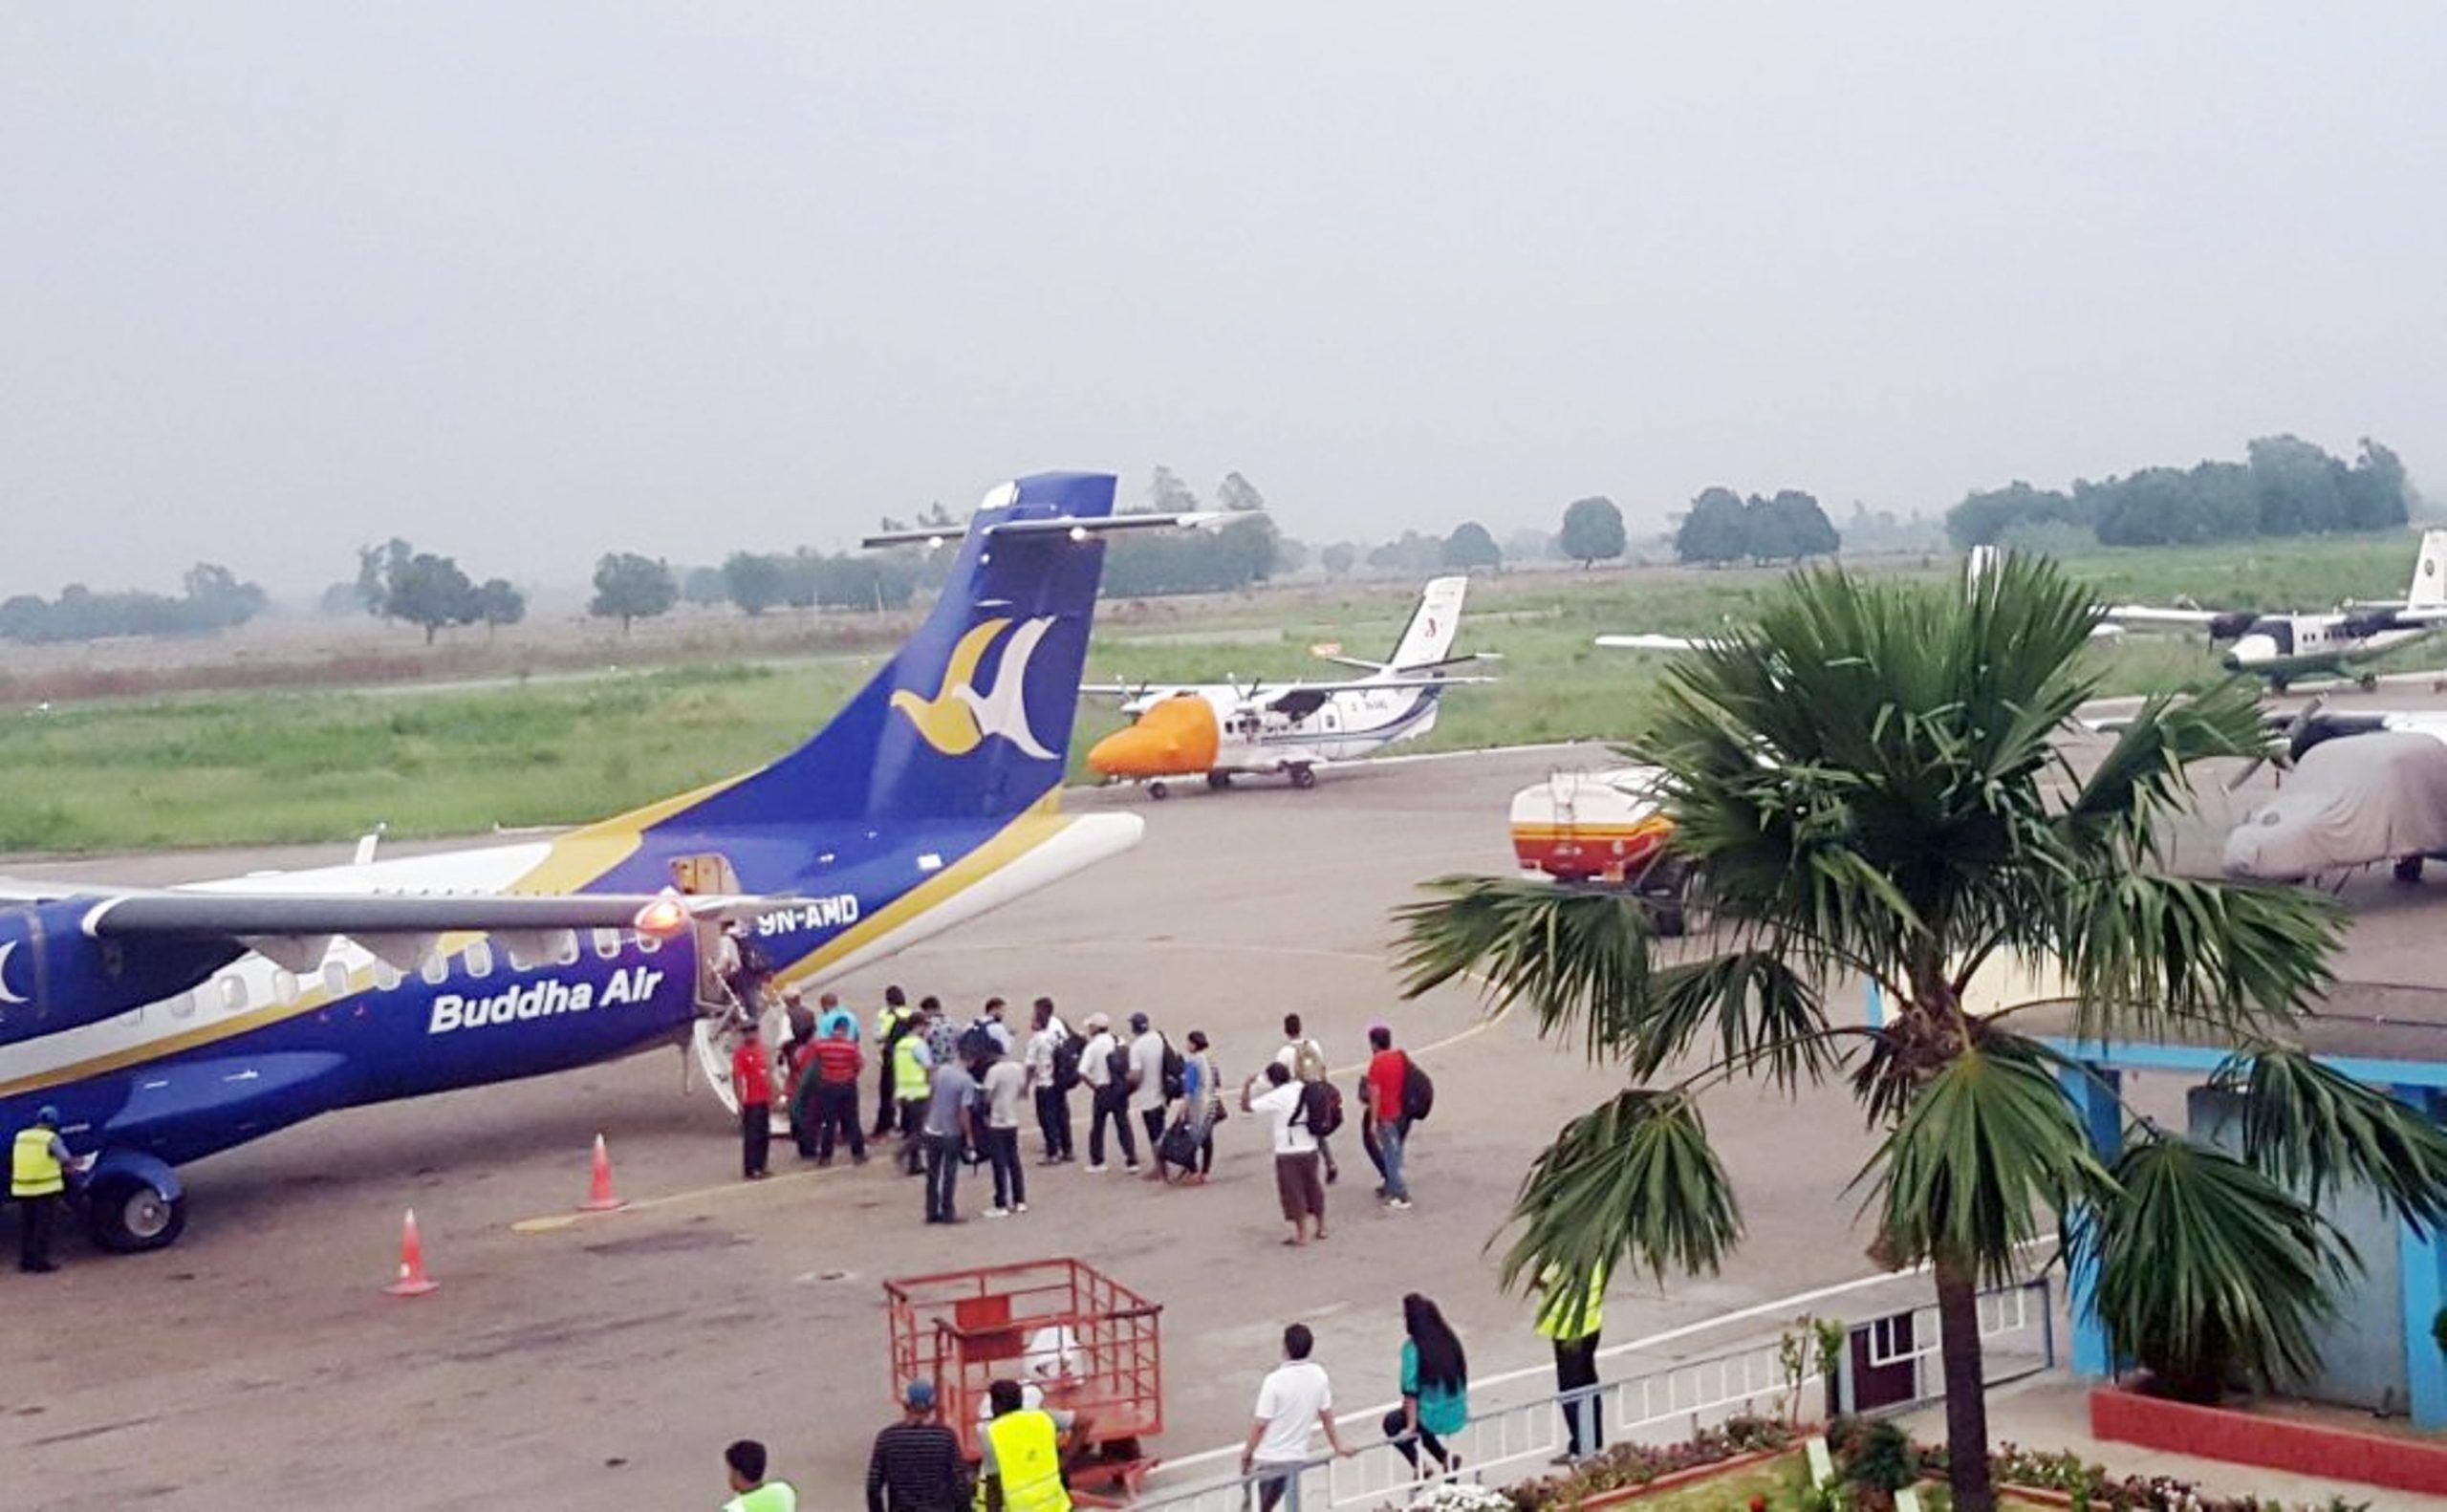 न्यायधिशको स्वास्थ्यमा समस्या आएपछि धनगढीबाट काठमाण्डौ उडेको विमान नेपालगञ्जमा अवतरण